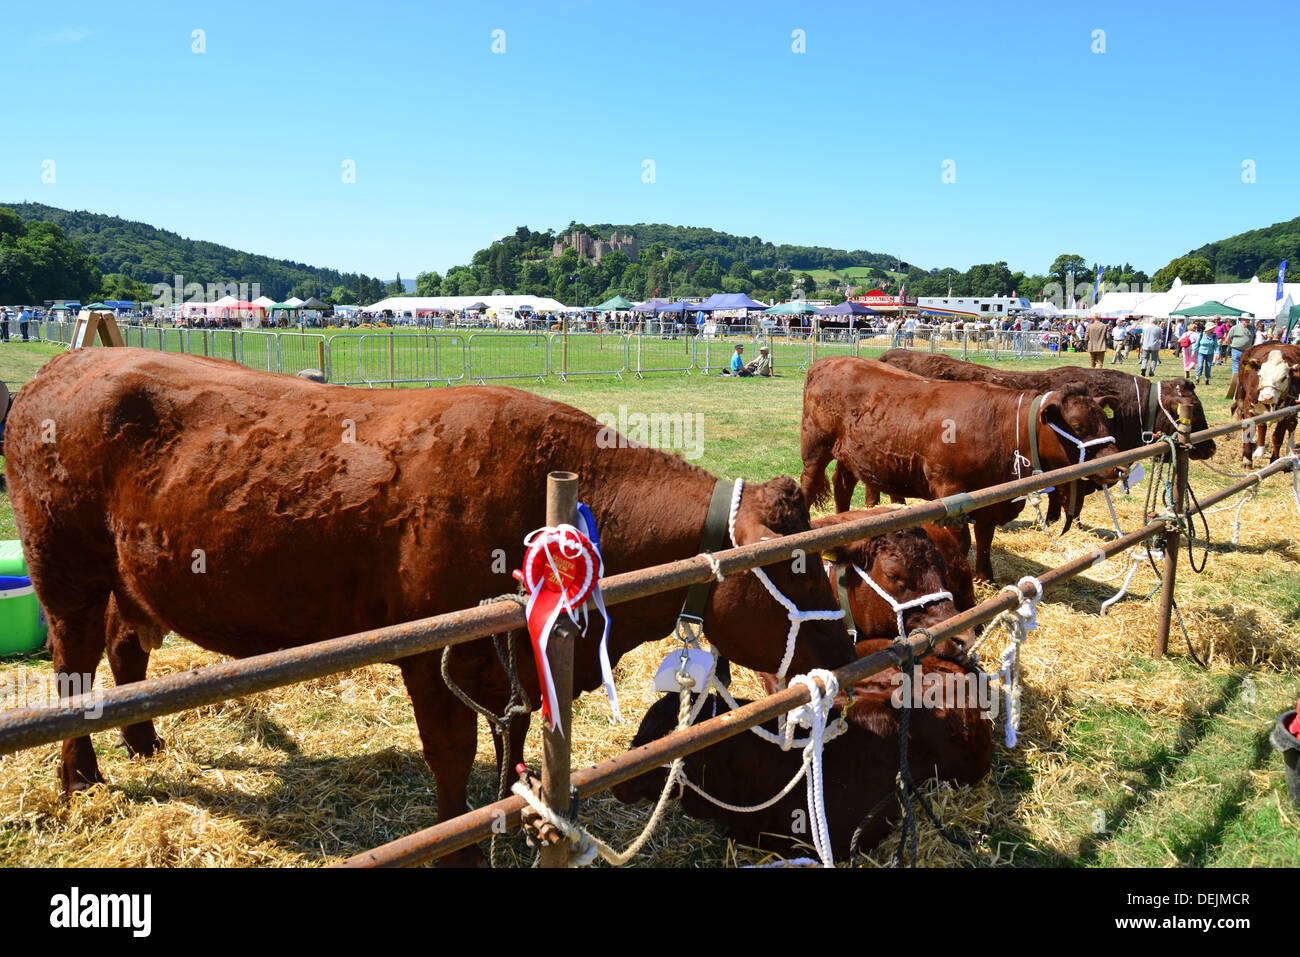 Voir les bovins au stylo à l'Exposition agricole de Dunster, château de Dunster Pelouses, Dunster, Somerset, England, United Kingdom Banque D'Images